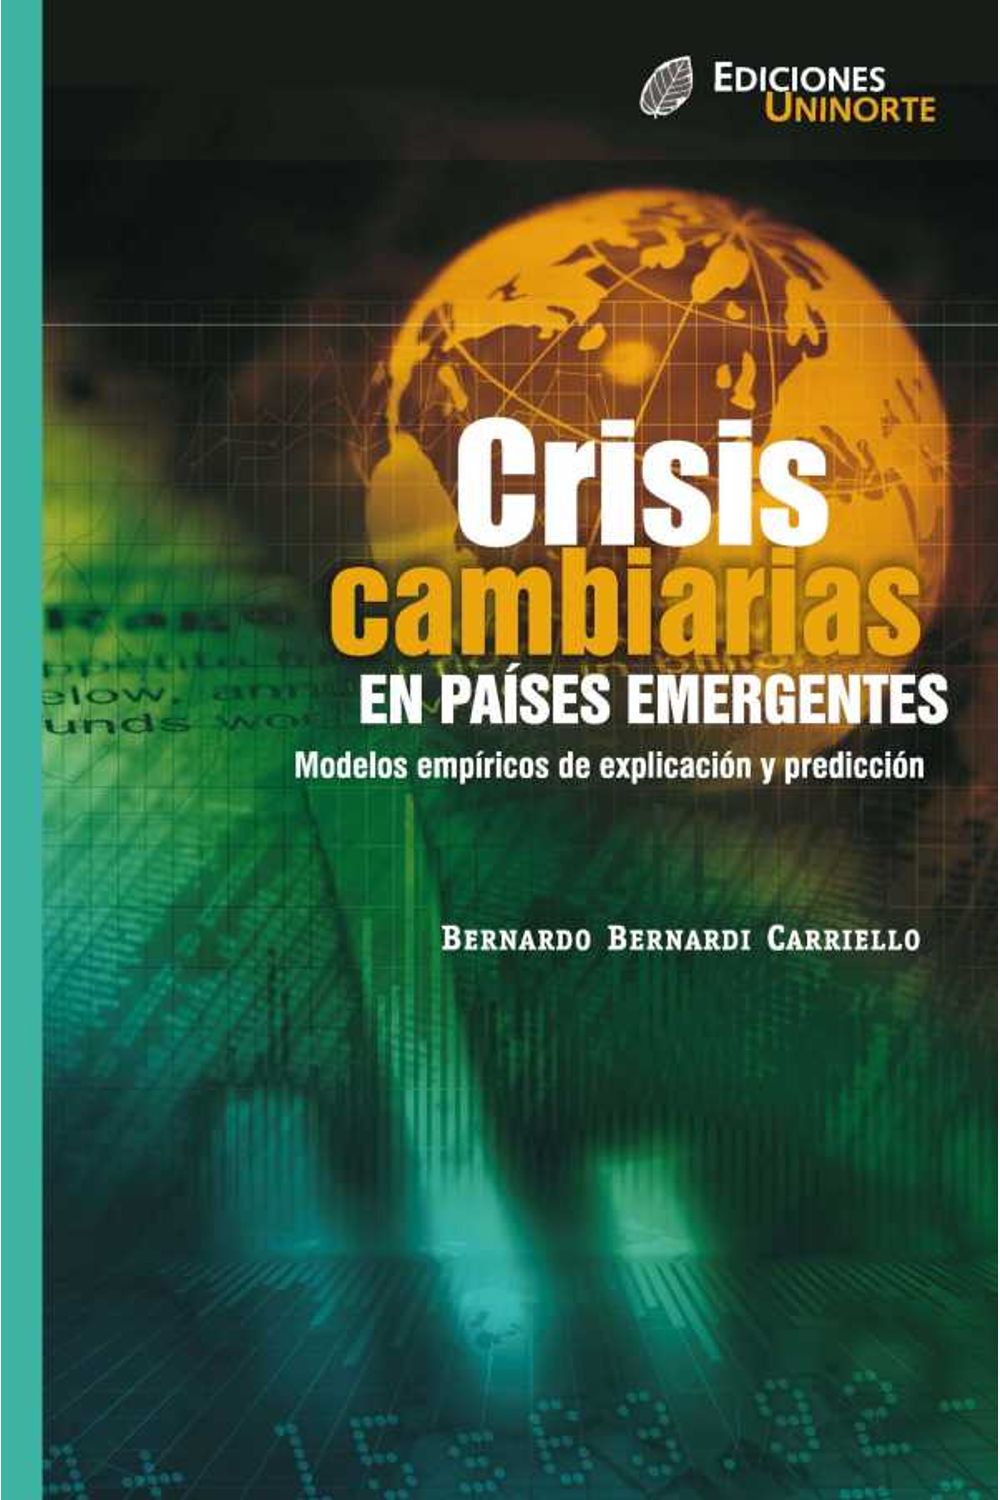 bw-crisis-cambiarias-en-paiacuteses-emergentes-modelos-empiacutericos-de-explicacioacuten-y-prediccioacuten-u-del-norte-editorial-9789587410730